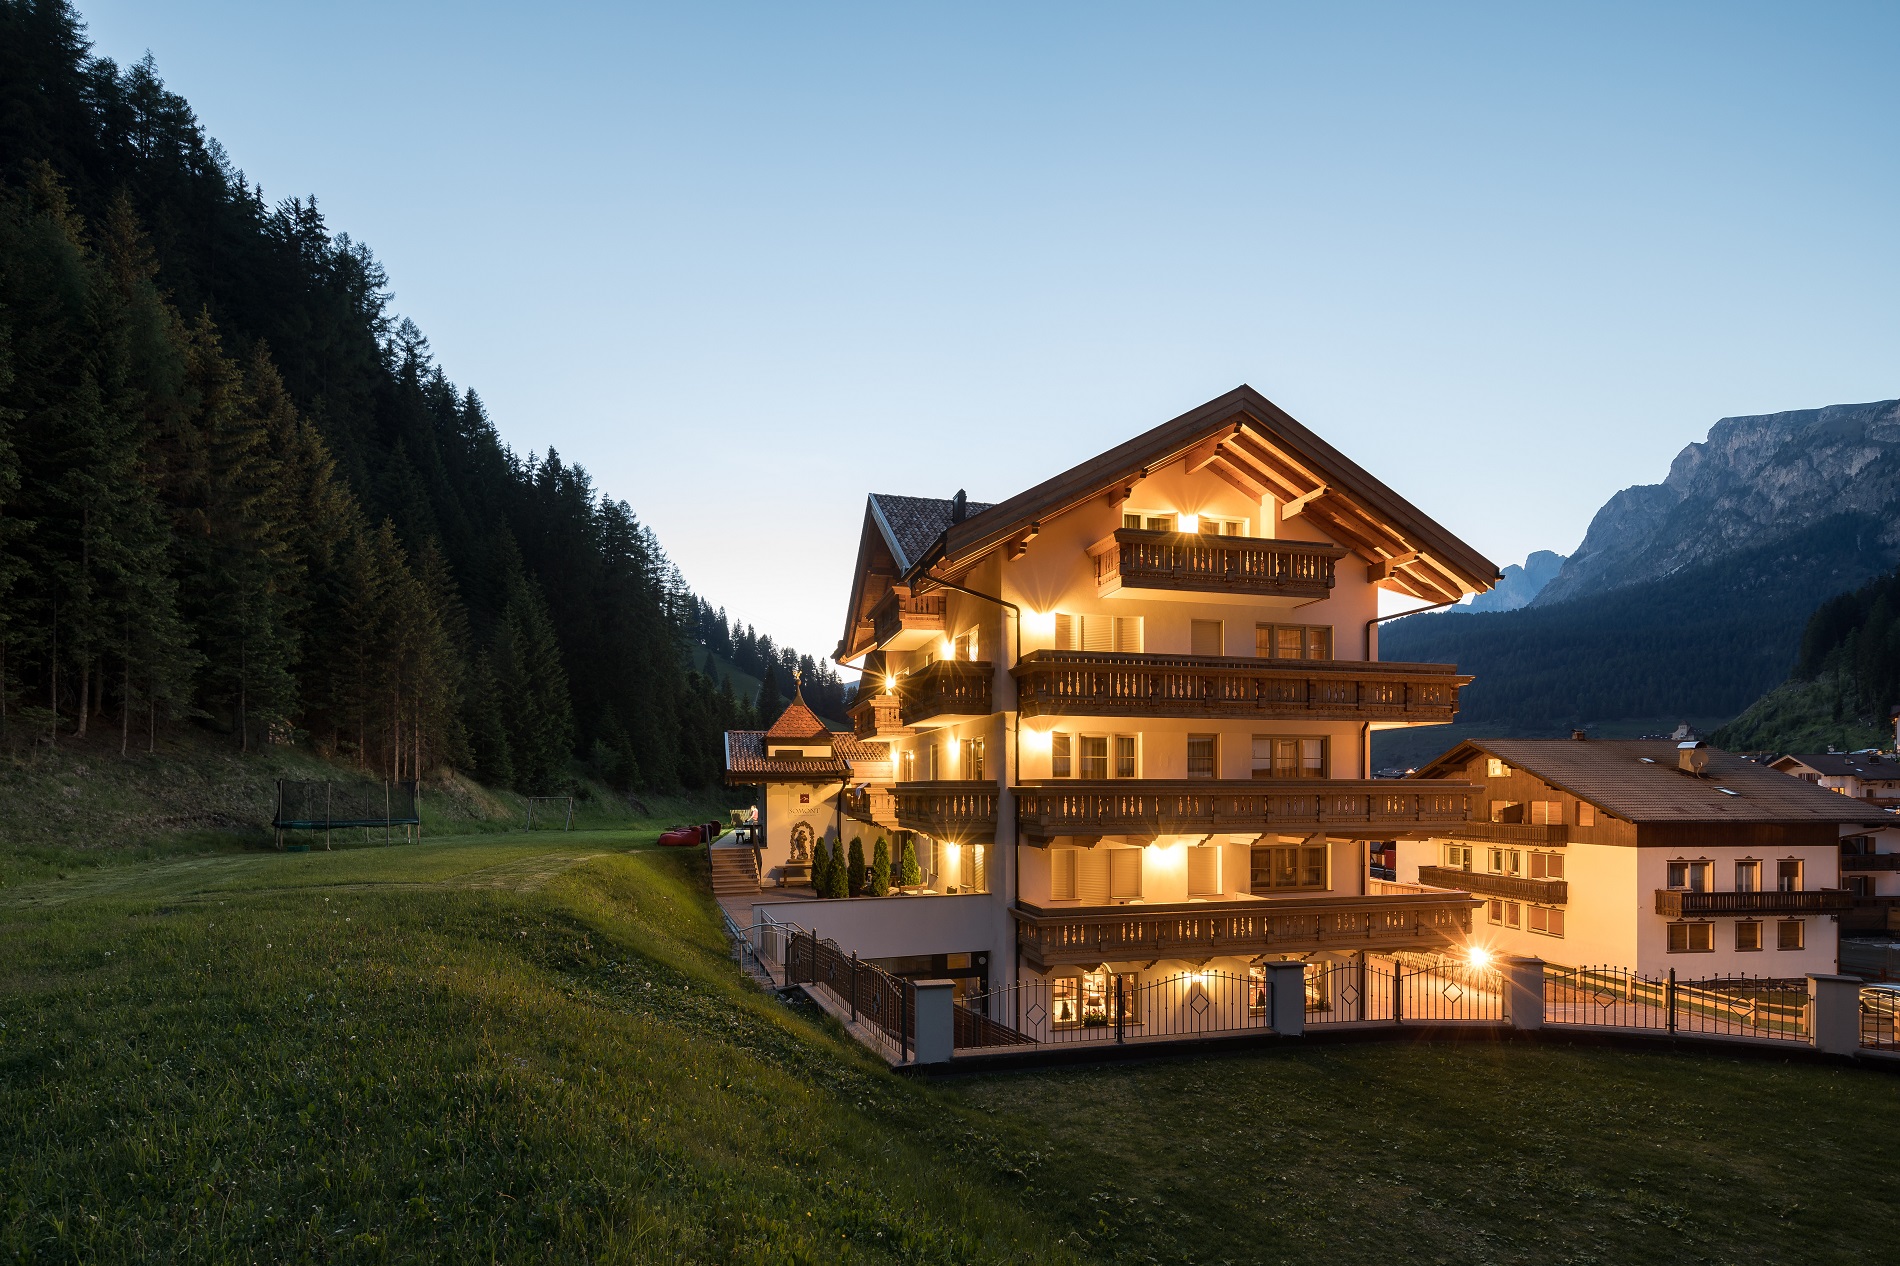  Hotel Somont 39048 Wolkenstein/Gröden - Grödental - Dolomiten in Südtirol
